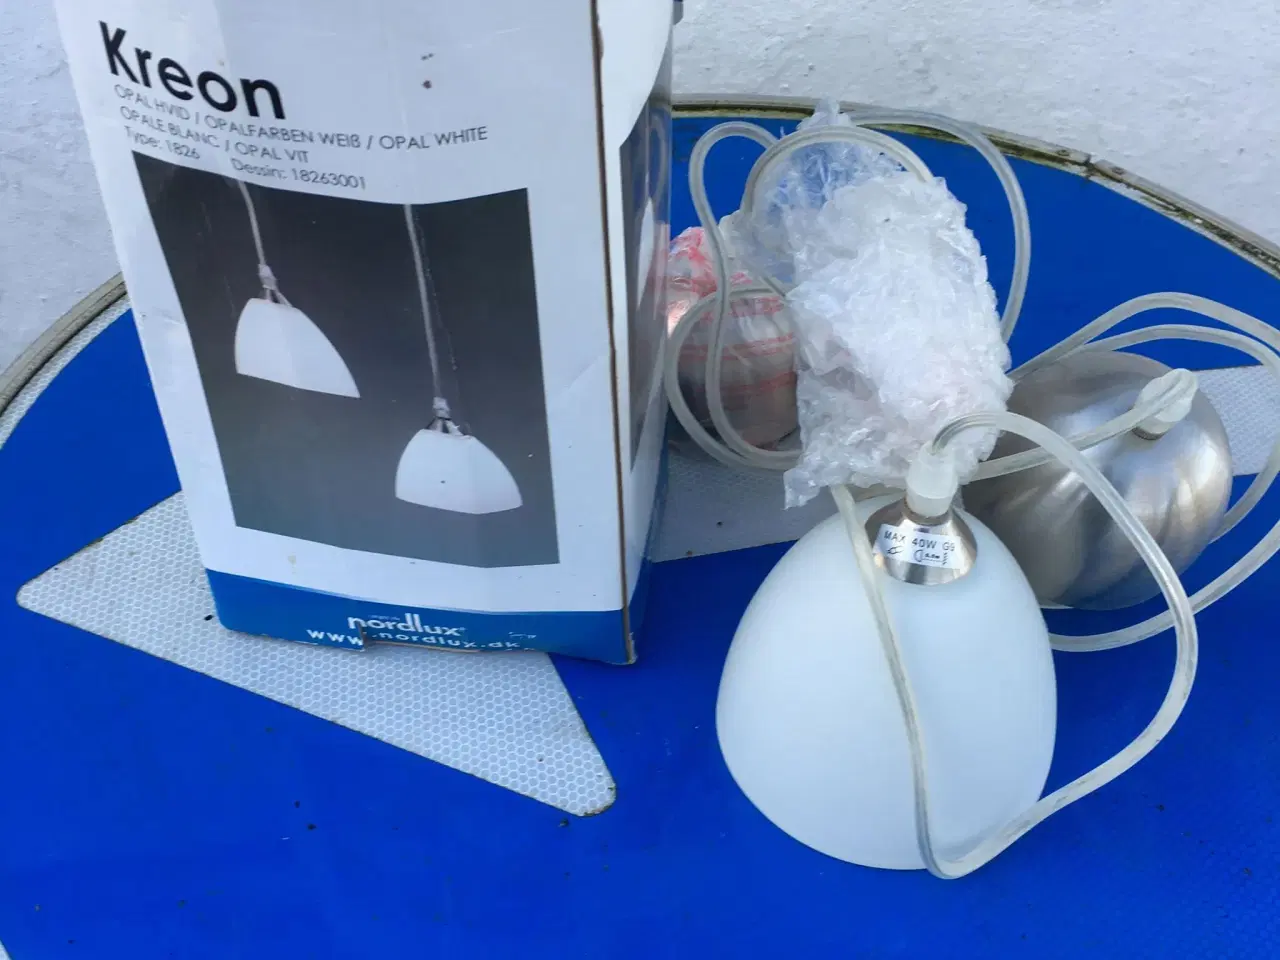 Billede 1 - 2 nye kreon lofts lamper